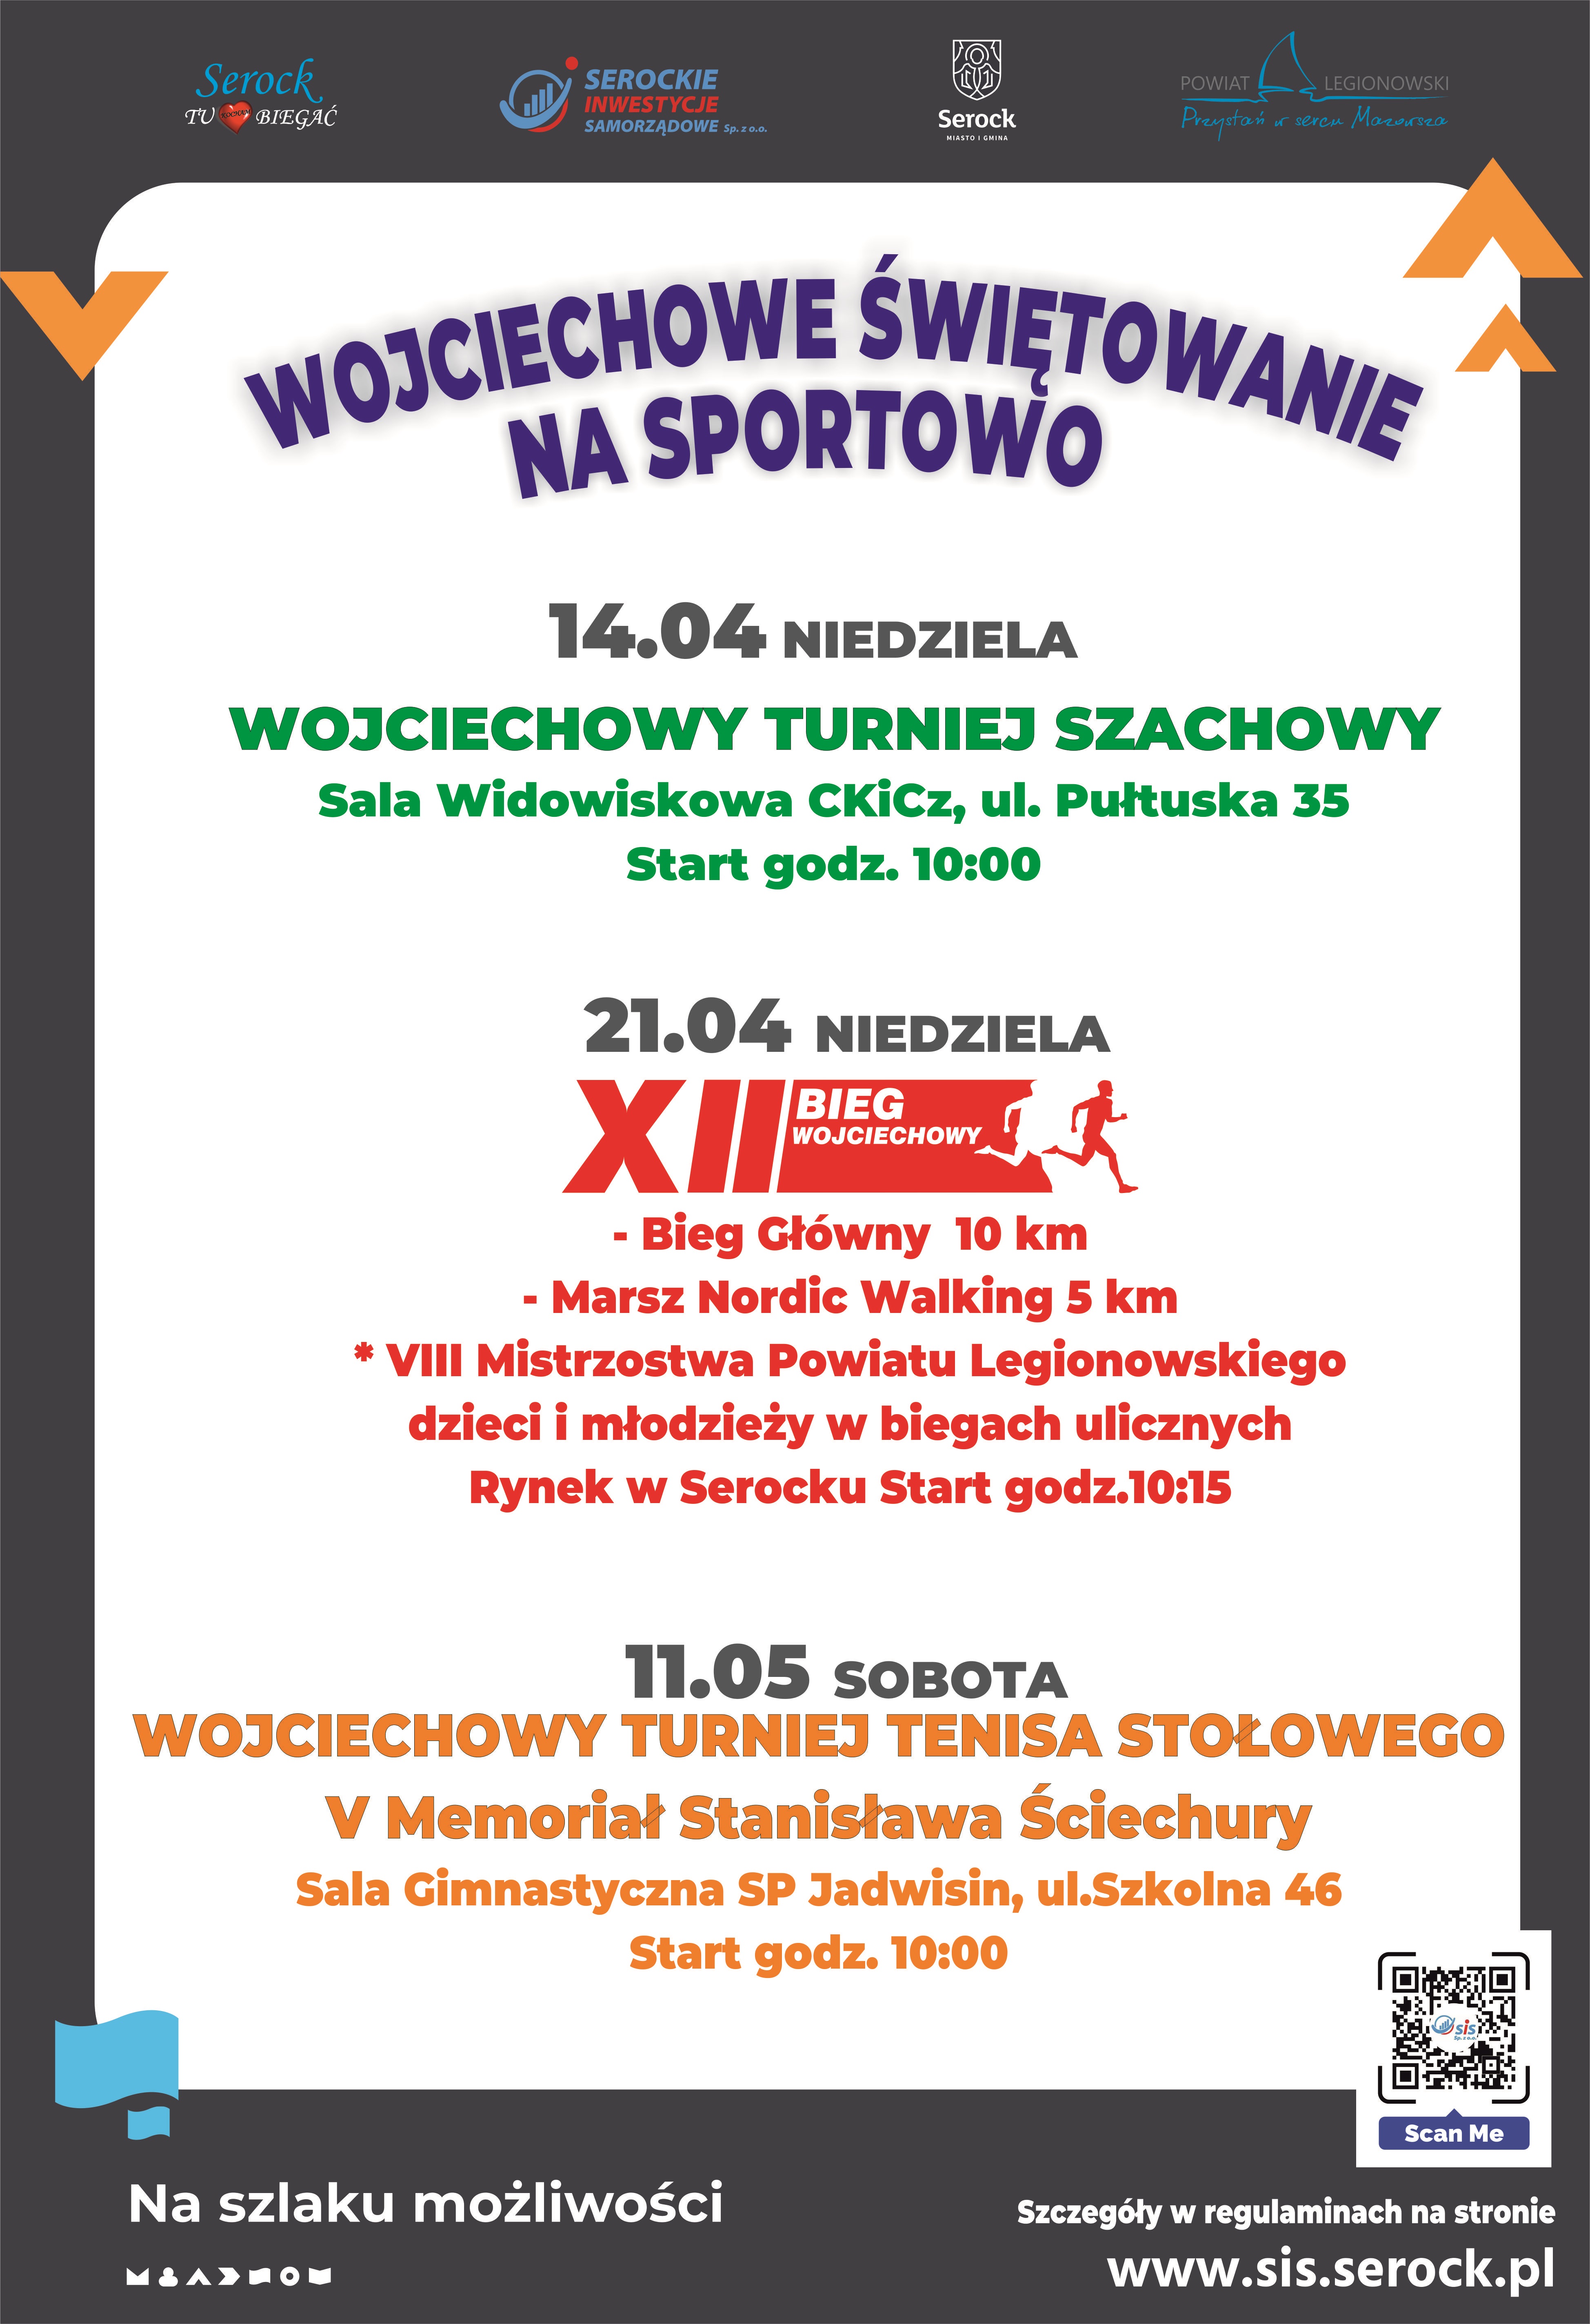 Wojciechowe świętowanie na sportowo - Wojciechowy turniej tenisa stołowego